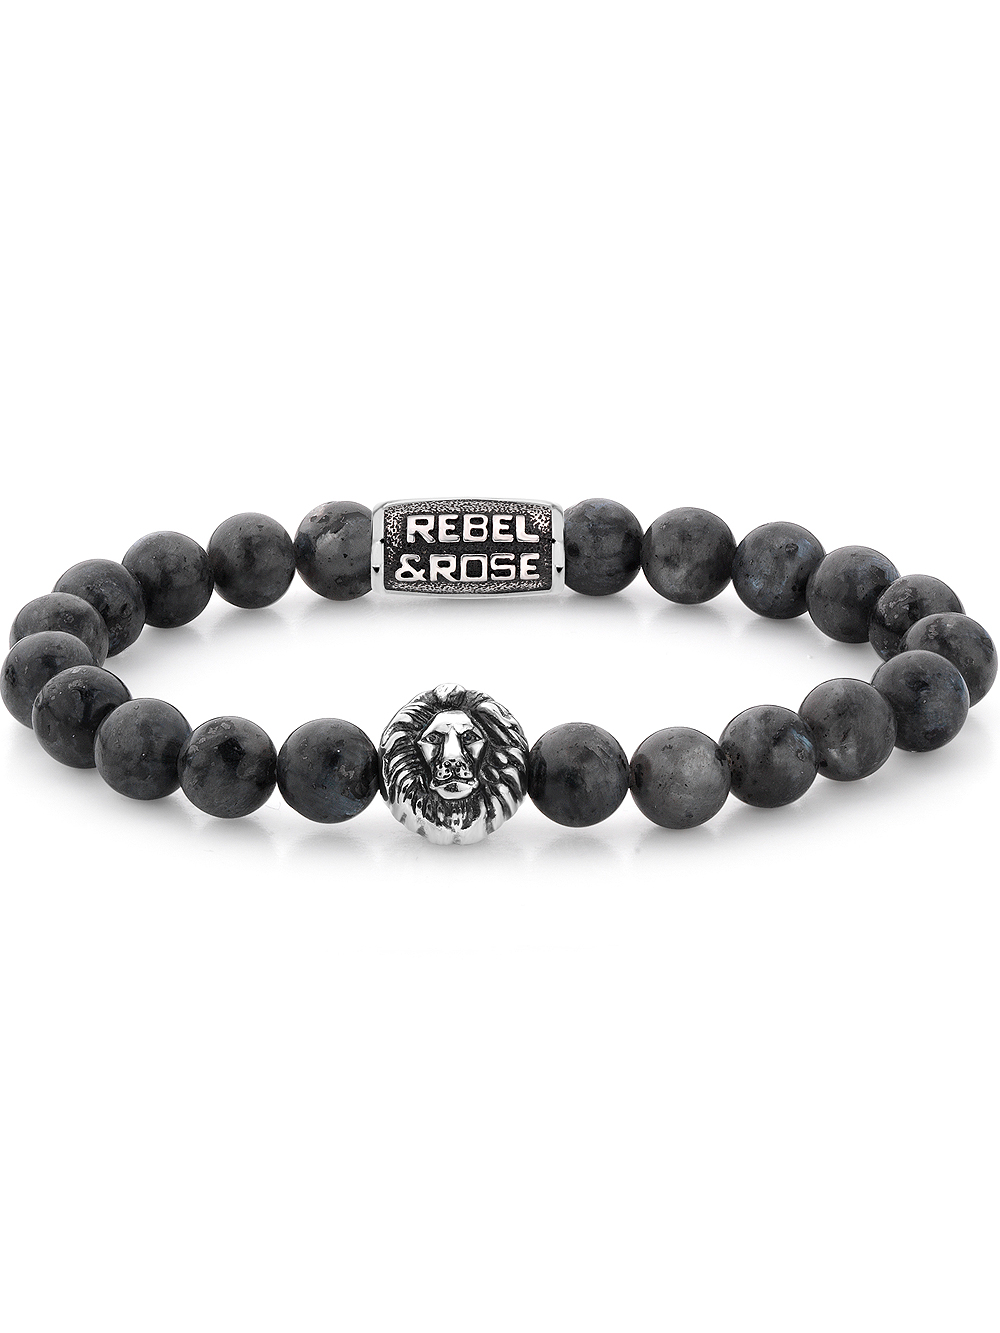 Rebel & Rose Bracelet Grey Seduction RR-8L025-S-M mens